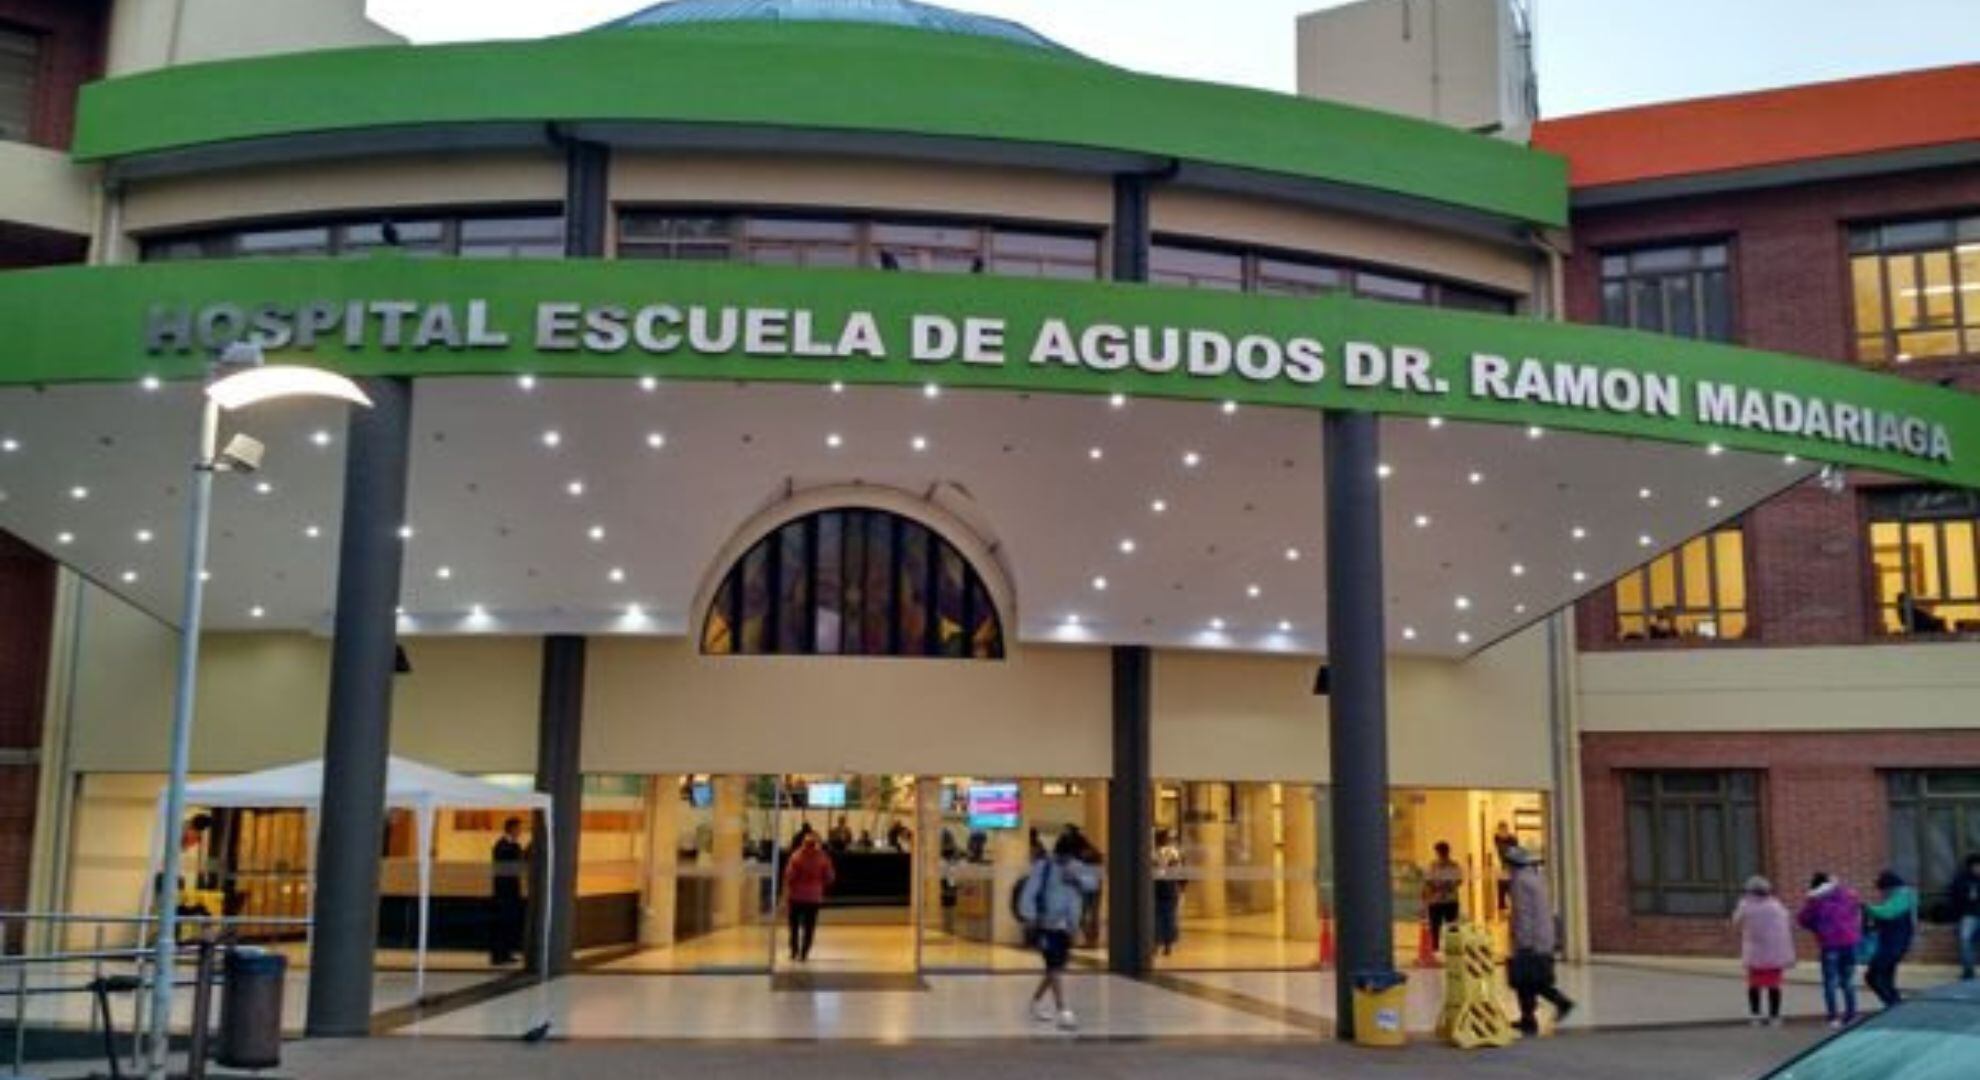 Hospital Escuela de Agudos Dr. Ramón Madariaga, Posadas, Misiones